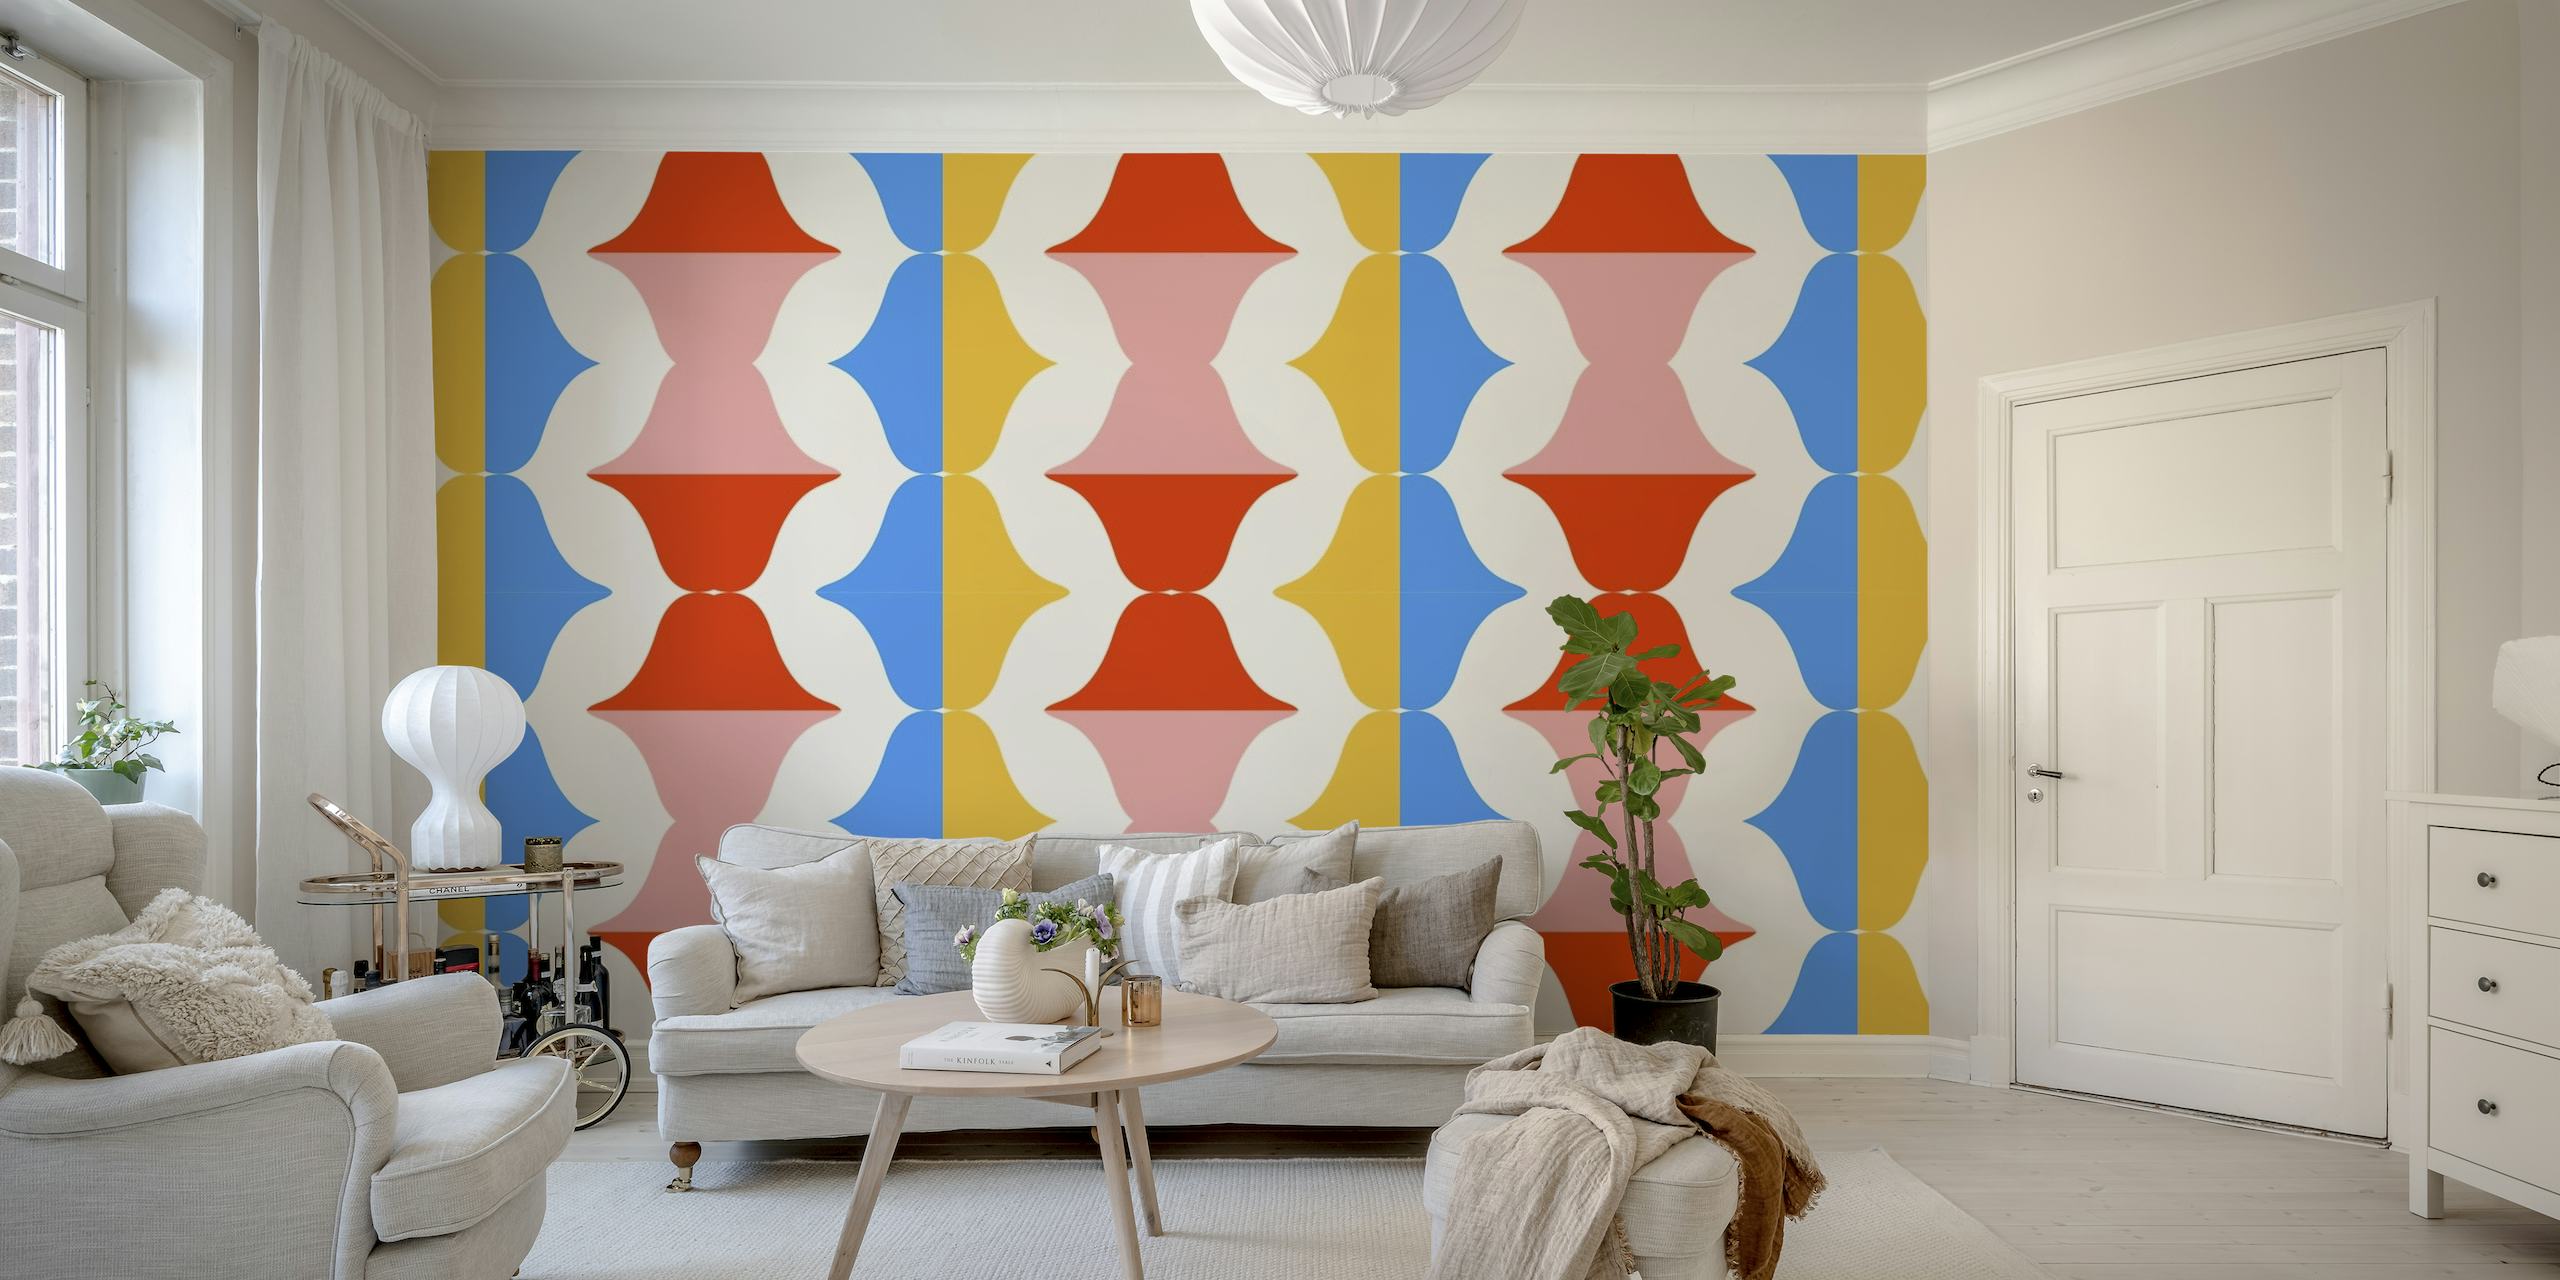 Retro-inspirert veggmaleri med leppemønster i popart-stil på en geometrisk blå, oransje og rosa bakgrunn.